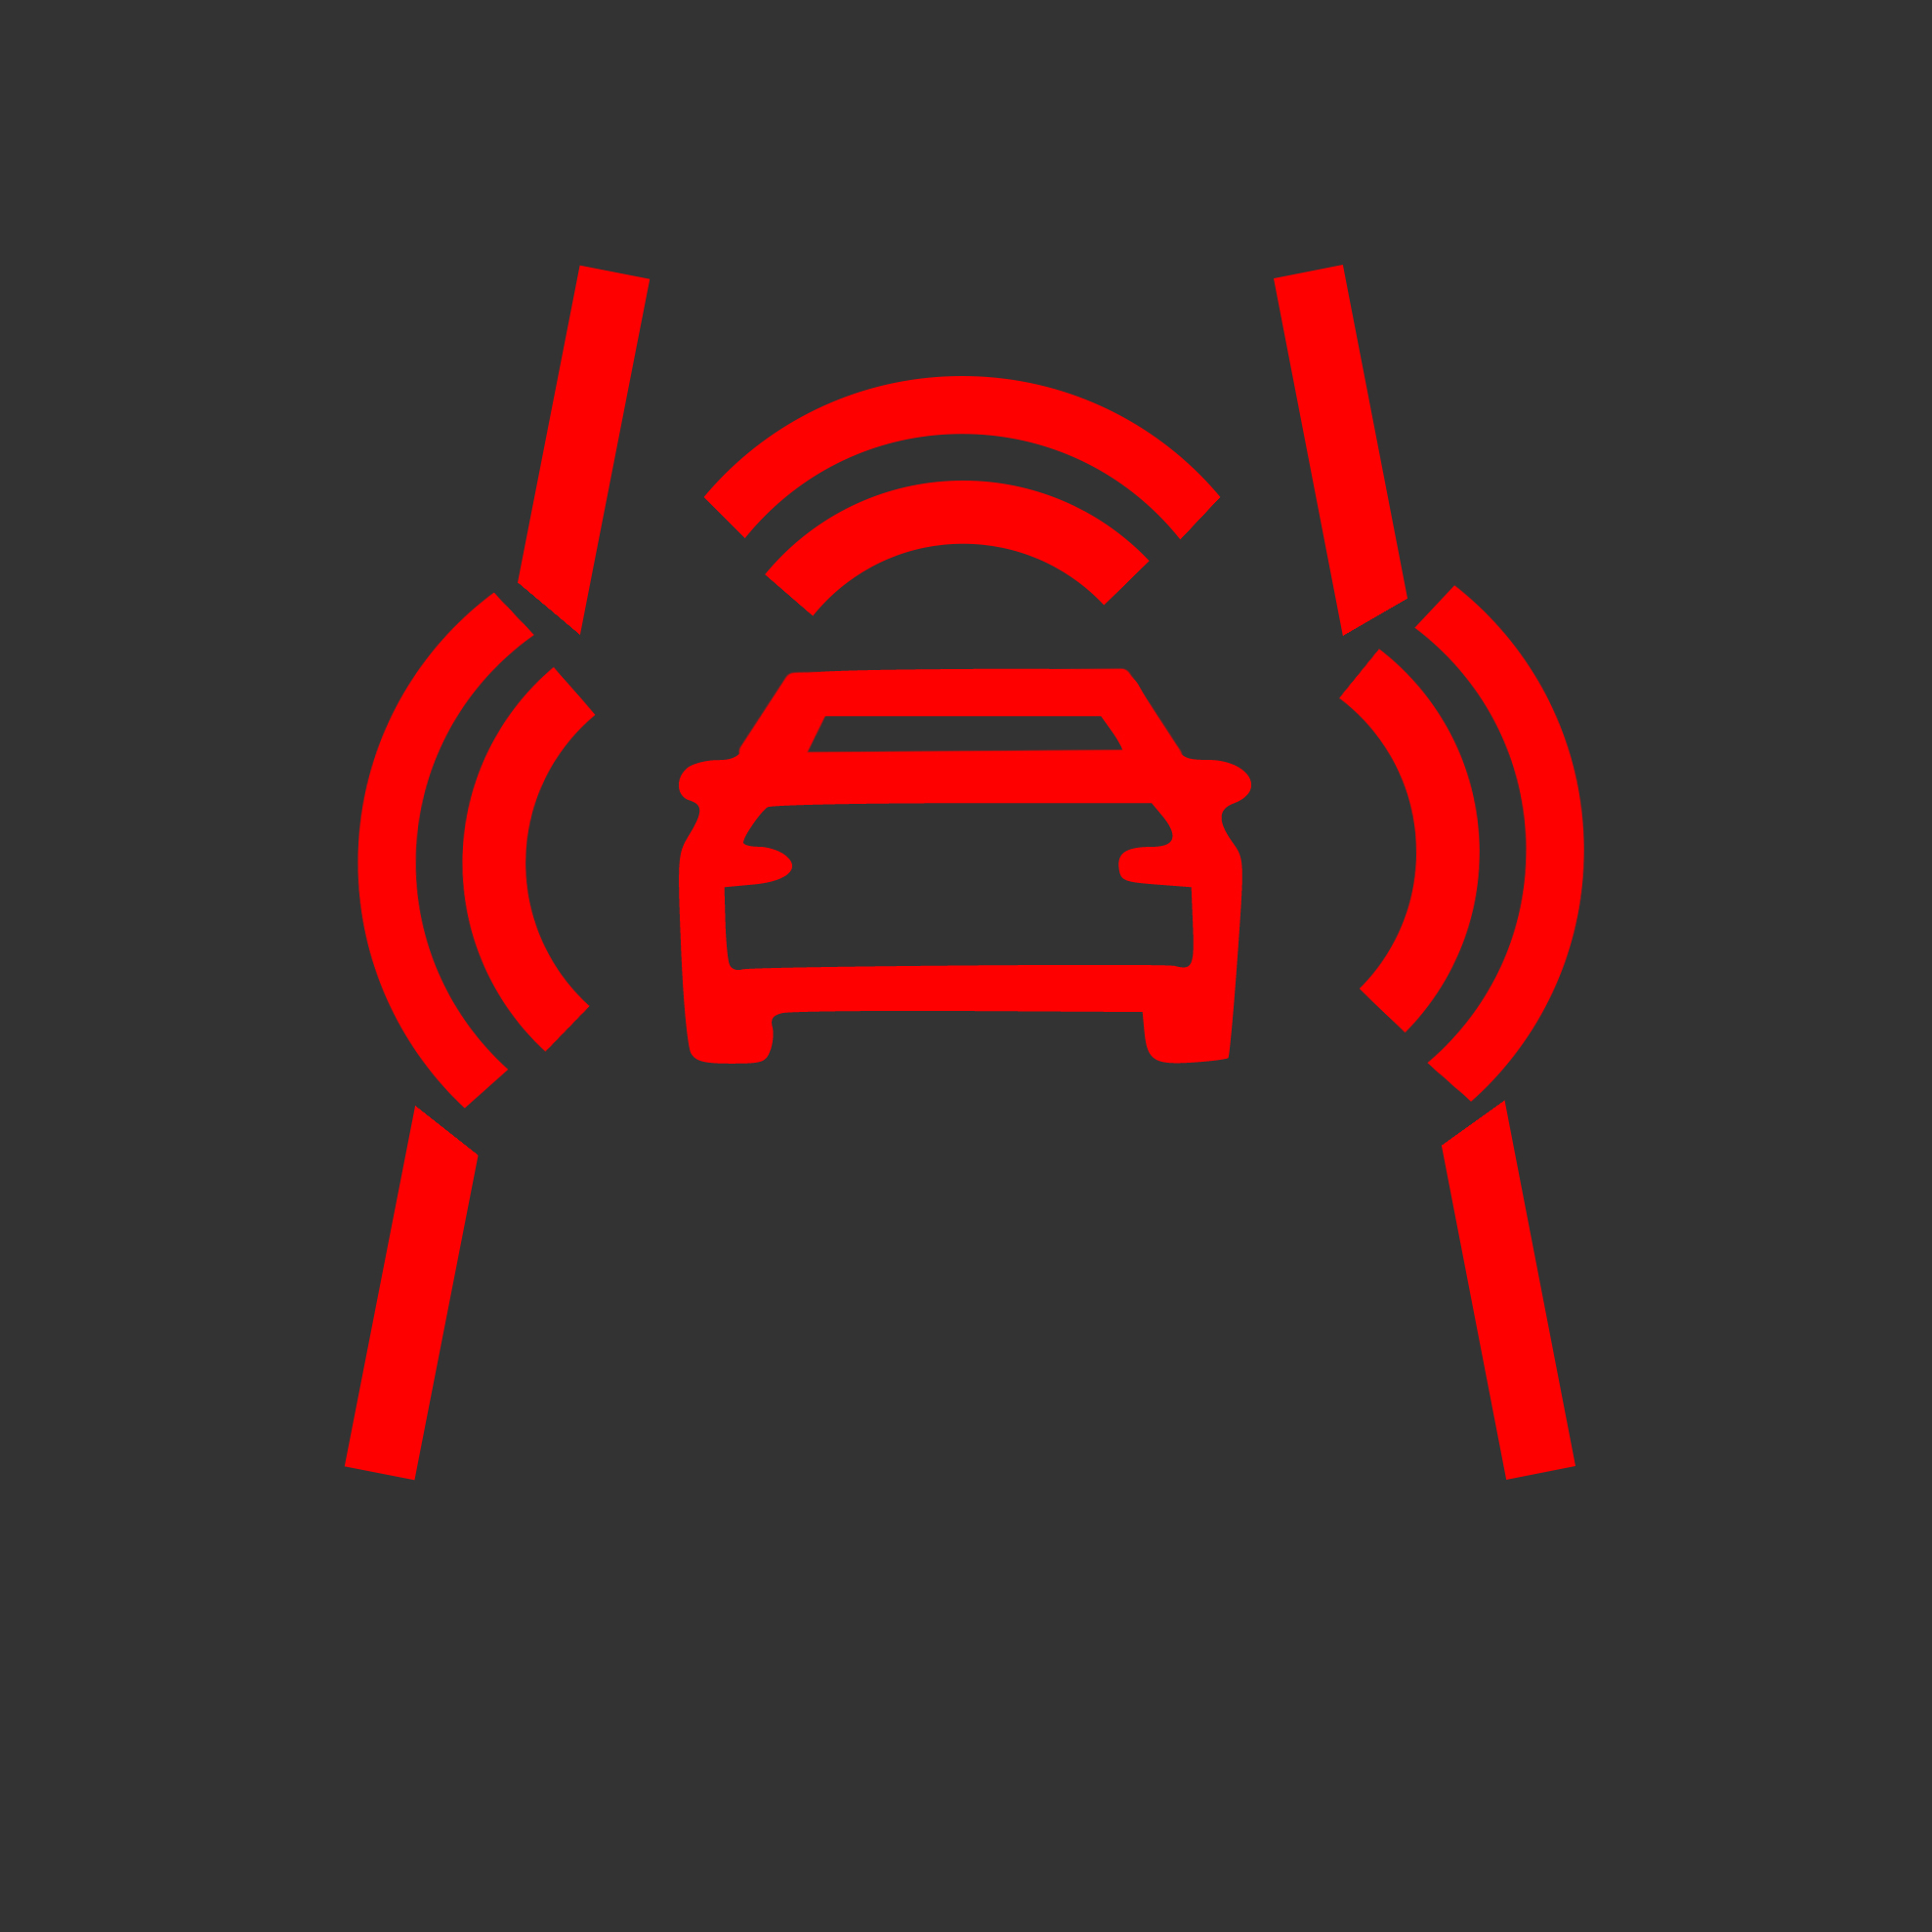 piros vonalak között autó, sugárzás, három dupla, görbe vonal világít a műszerfalon